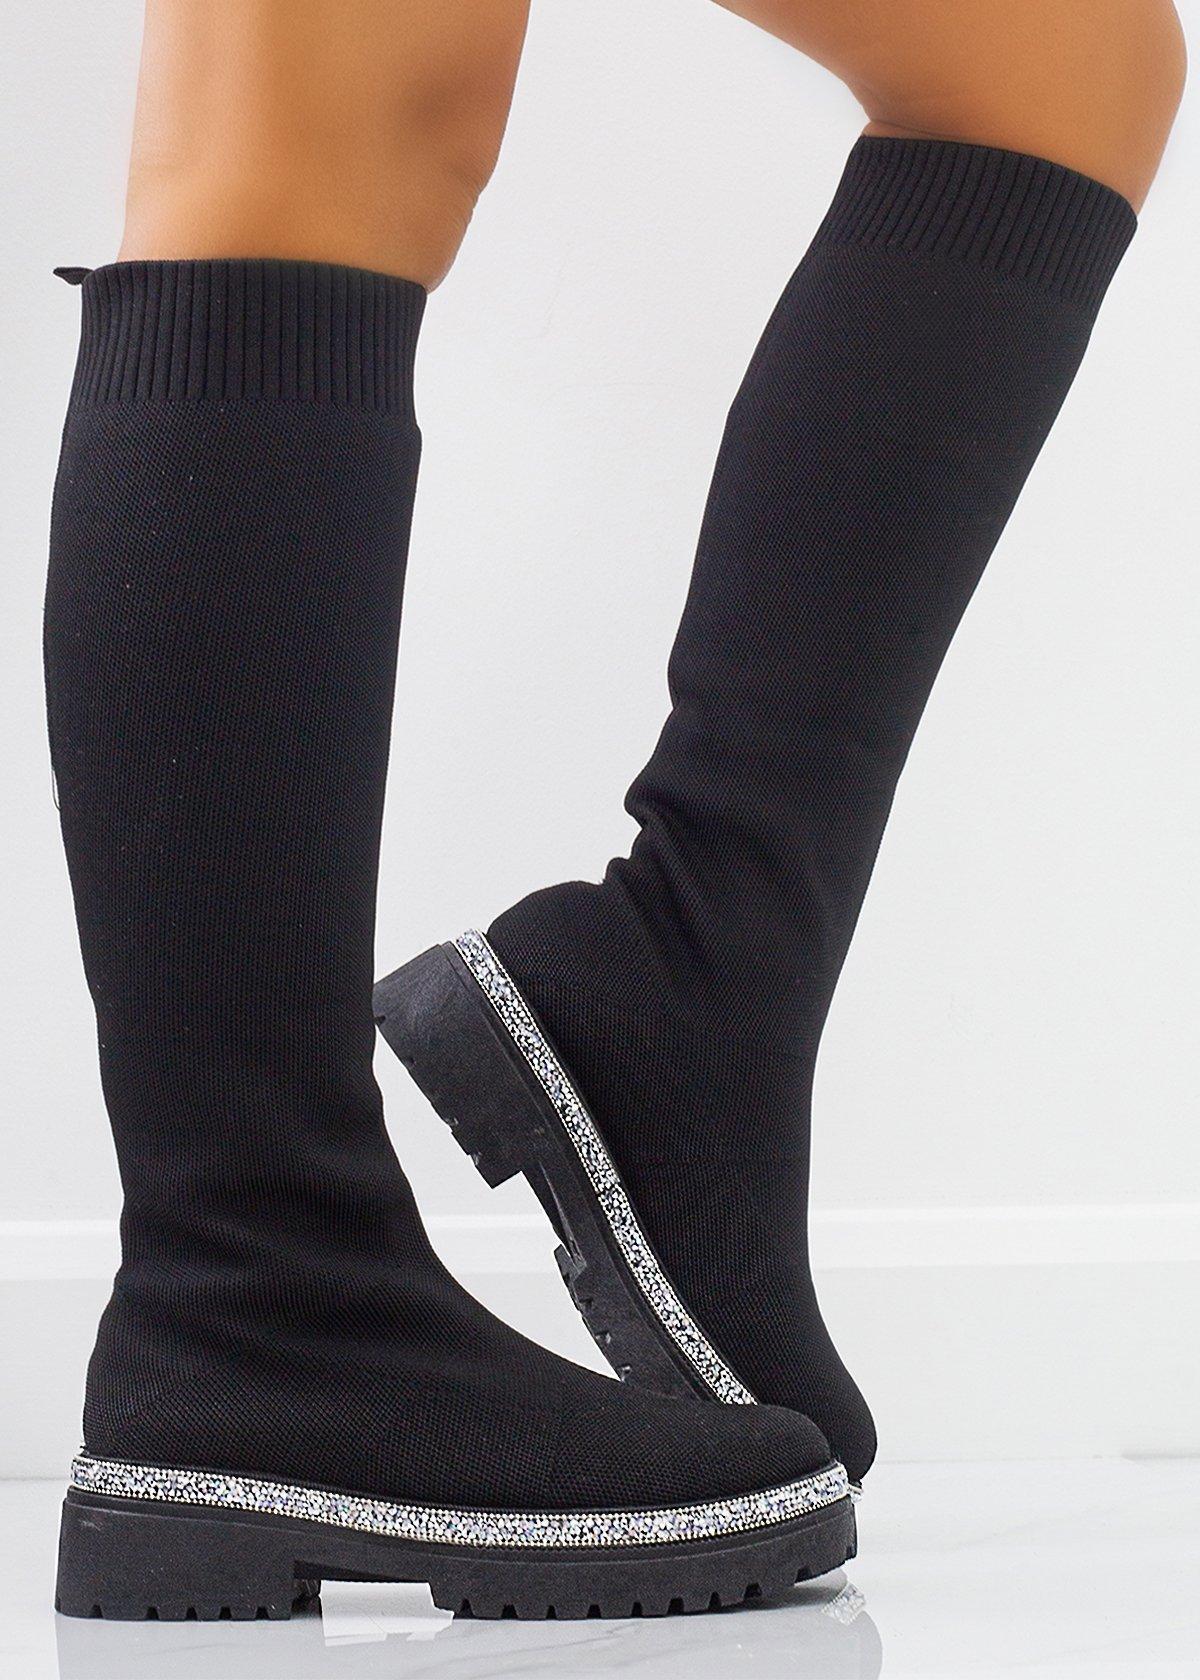 Блестящие эластичные ботинки-носки до икры Love Lemonade, черный короткие носки носки до икры носки до щиколотки блестящие масляные эластичные удобные дышащие невидимые носки